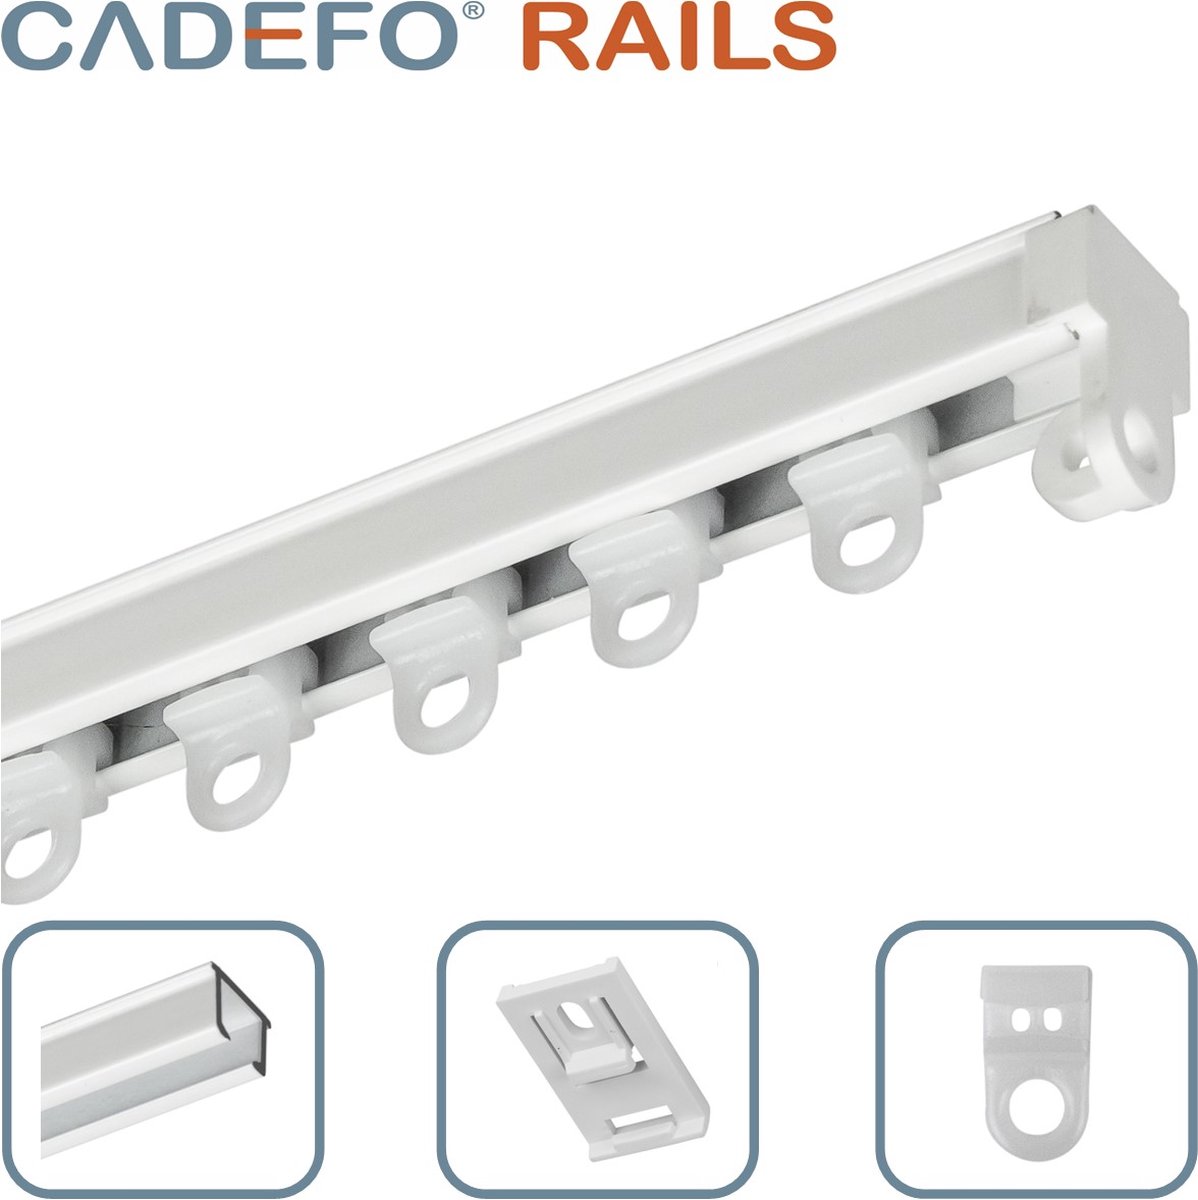 CADEFO RAILS (501 - 550 cm) Gordijnrails - Compleet op maat! - UIT 1 STUK - Leverbaar tot 6 meter - Plafondbevestiging - Lengte 513 cm